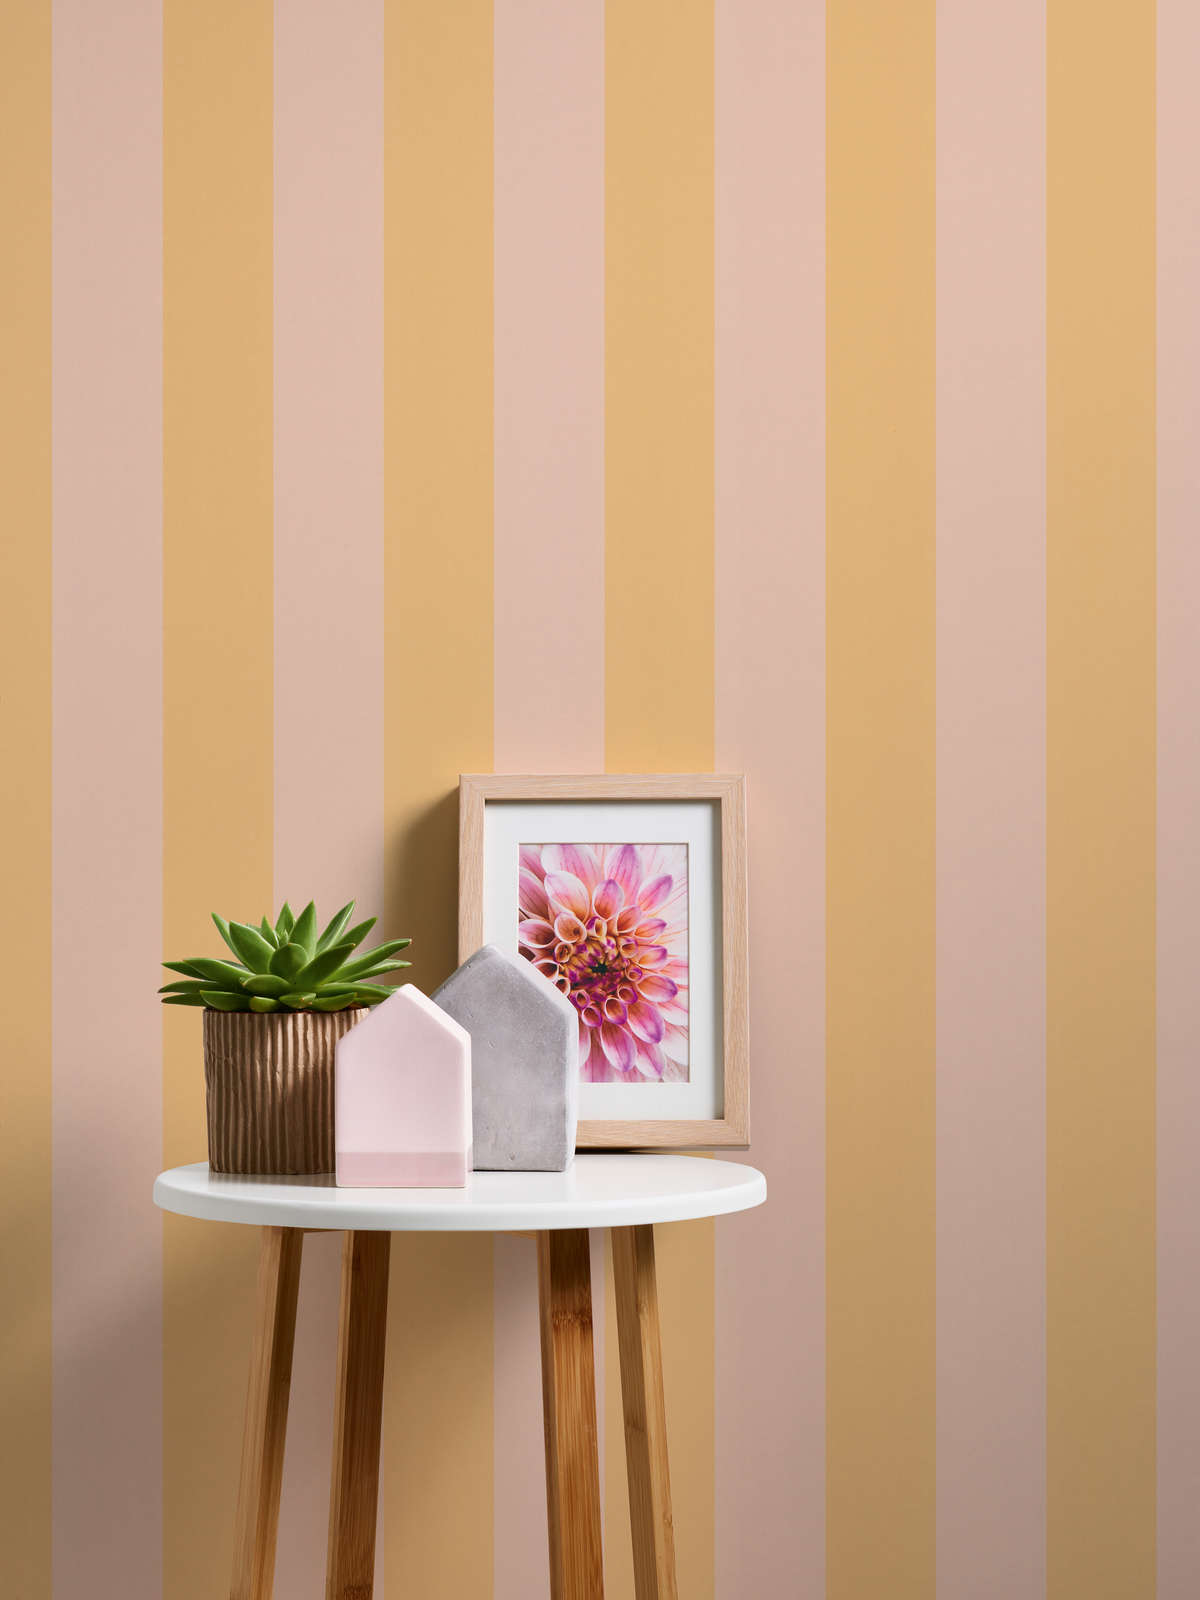             Papel pintado no tejido con rayas en bloques en tonos suaves - naranja, rosa
        